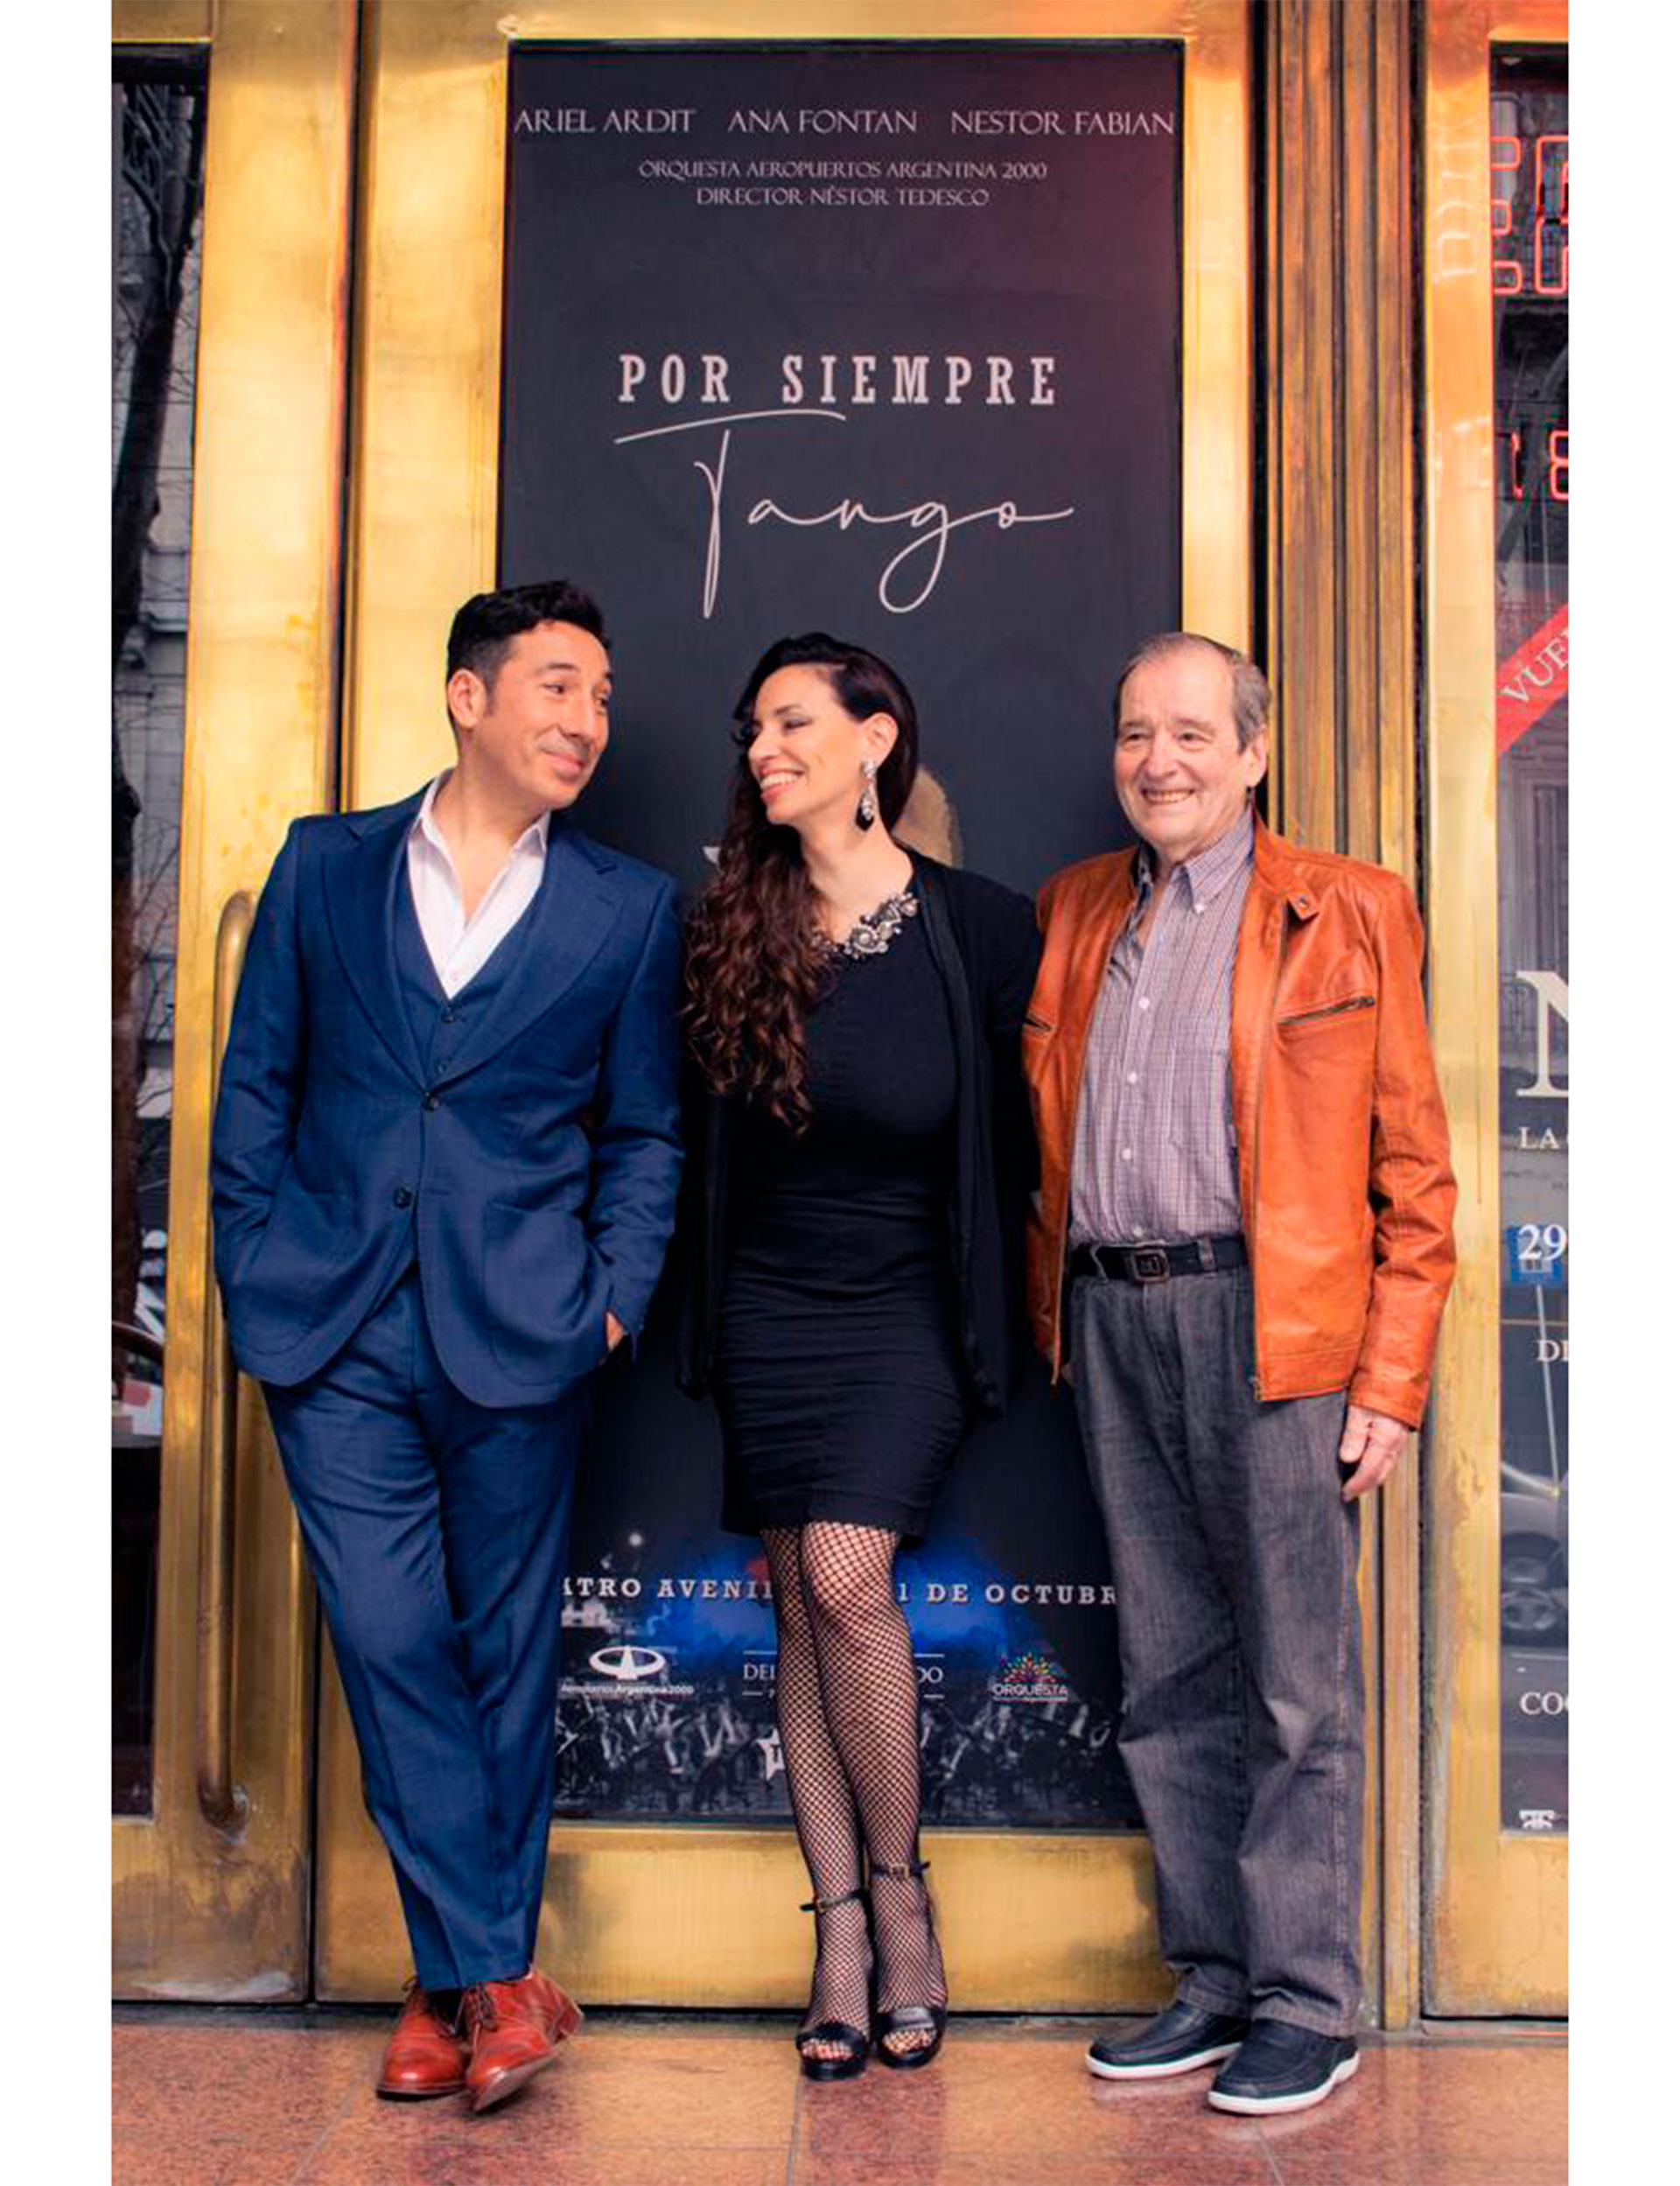 De izquierda a derecha: Ariel Ardit, Ana Fontán y Néstor Fabián, protagonistas del "Por siempre tango" que se presenta el sábado 1, viernes 7 y sábado 8 de octubre en el Teatro Avenida